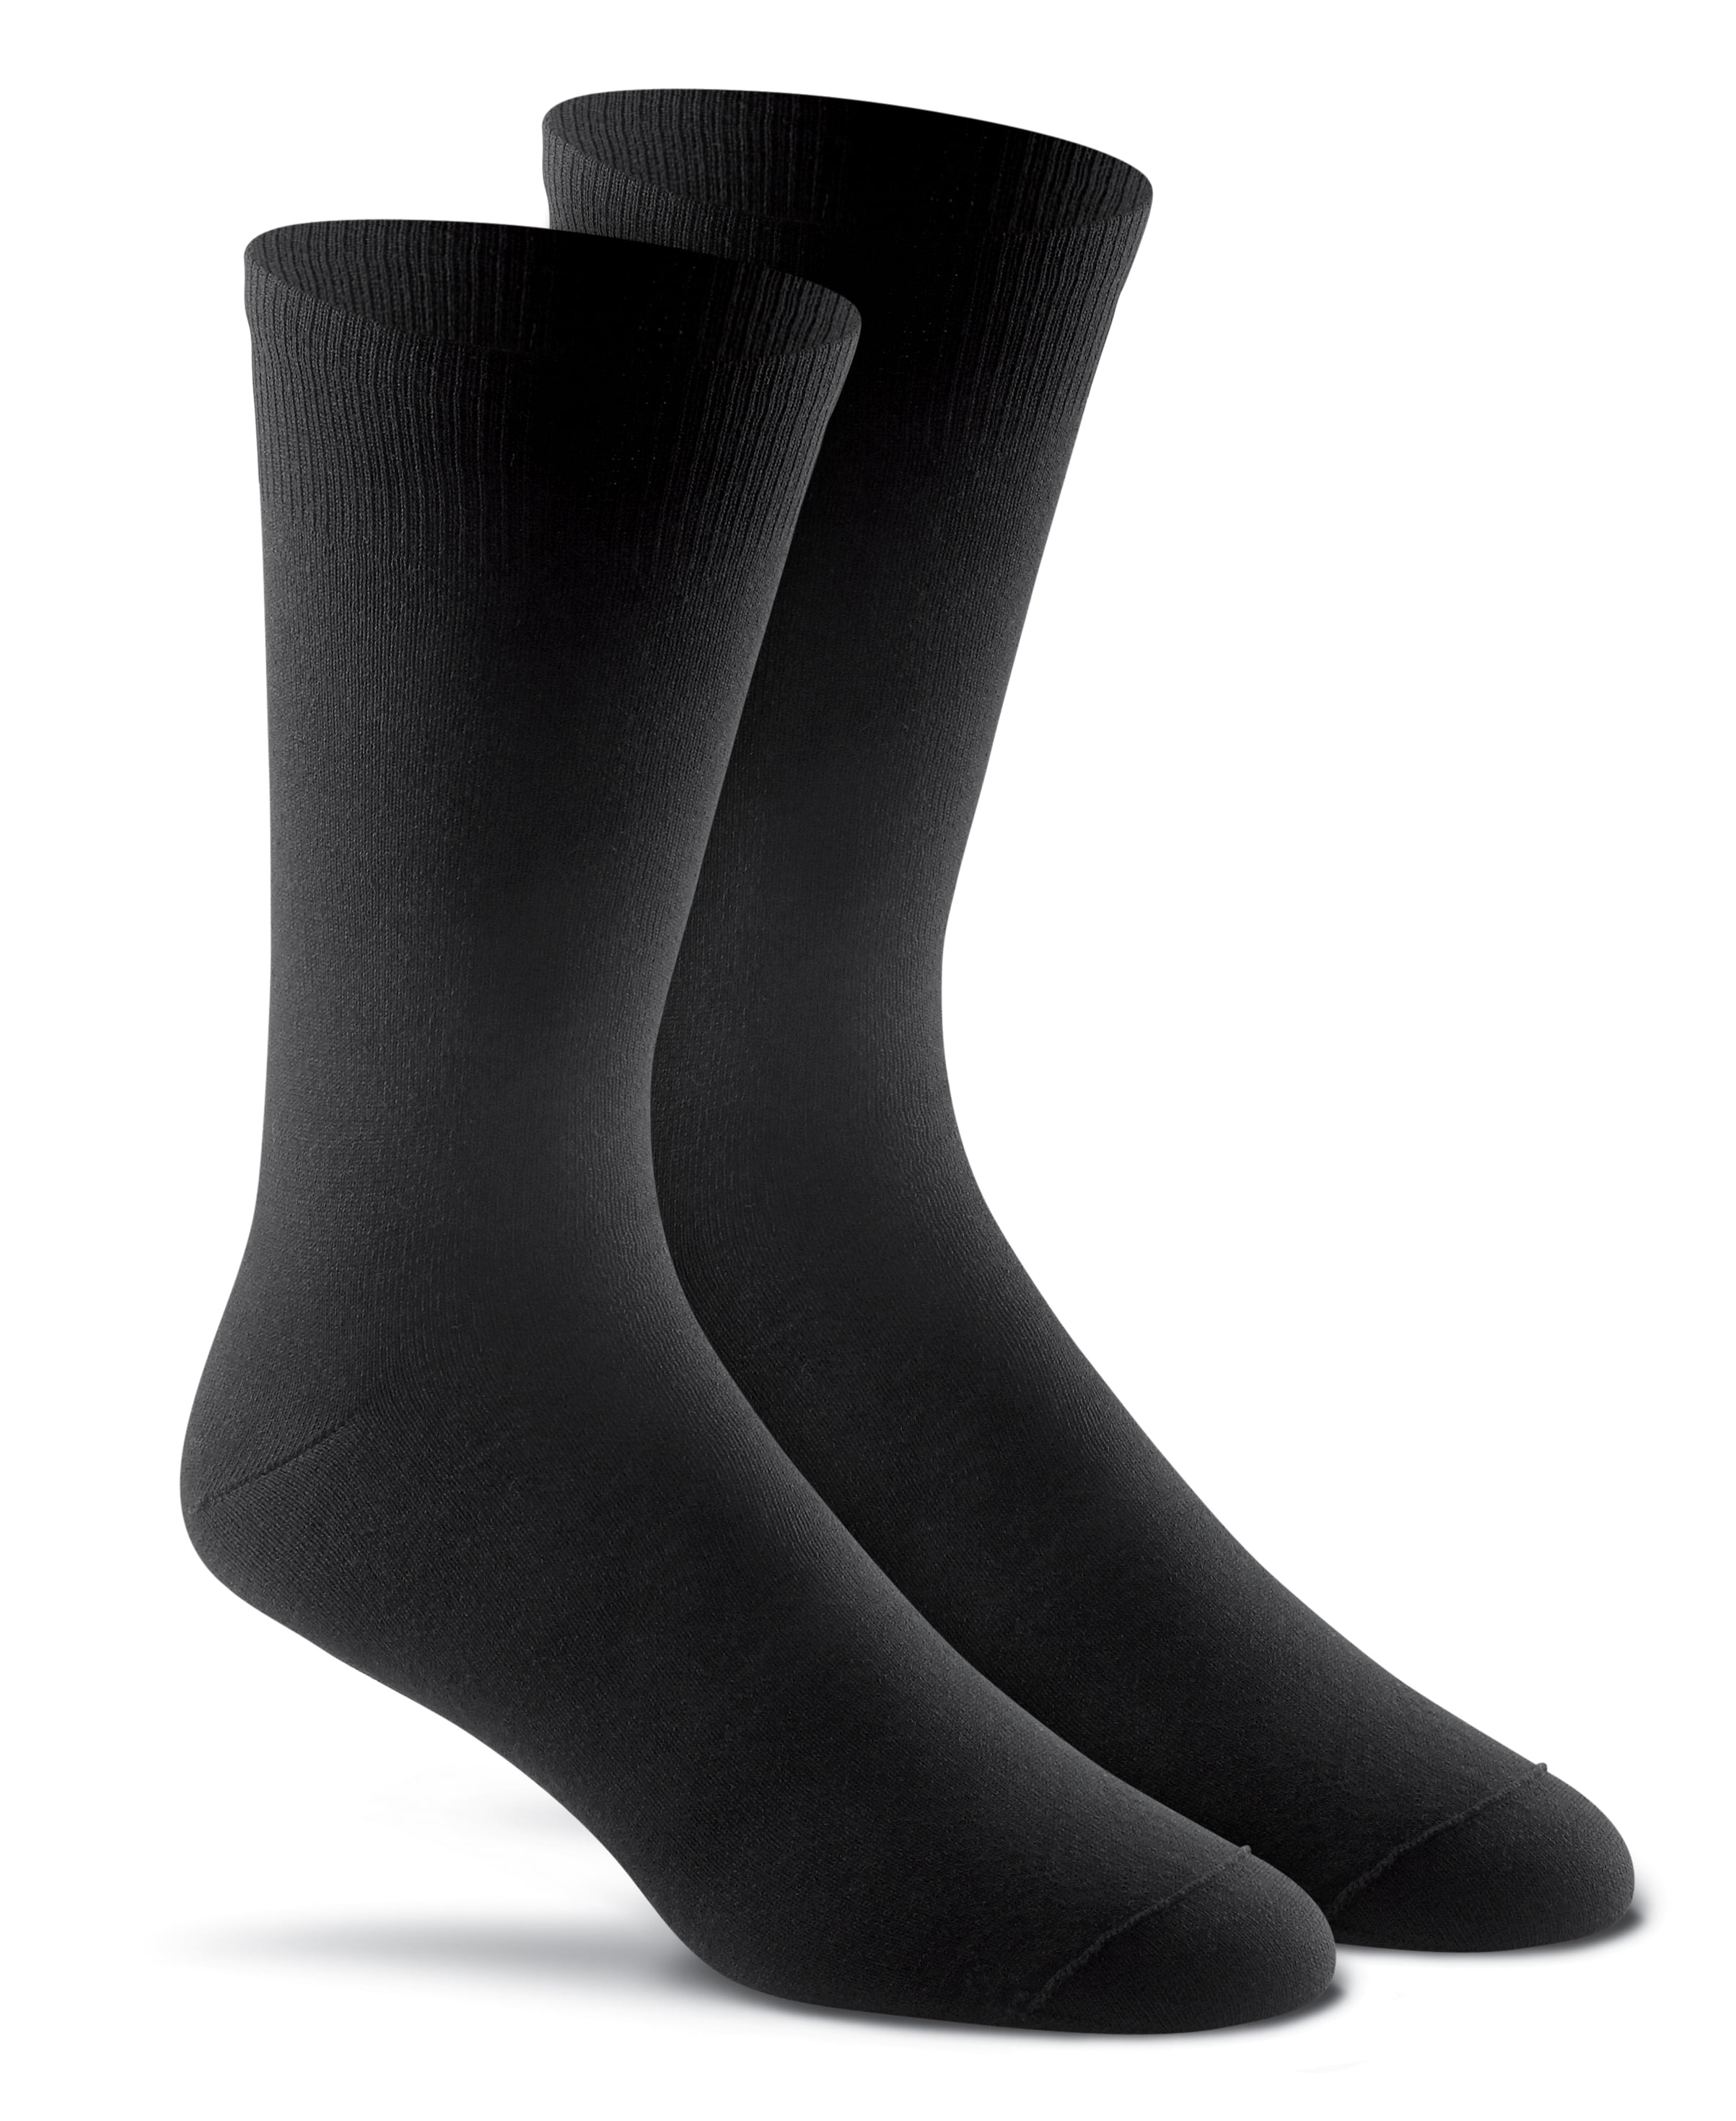 Fox River Wick Dry CoolMax Liner Socks